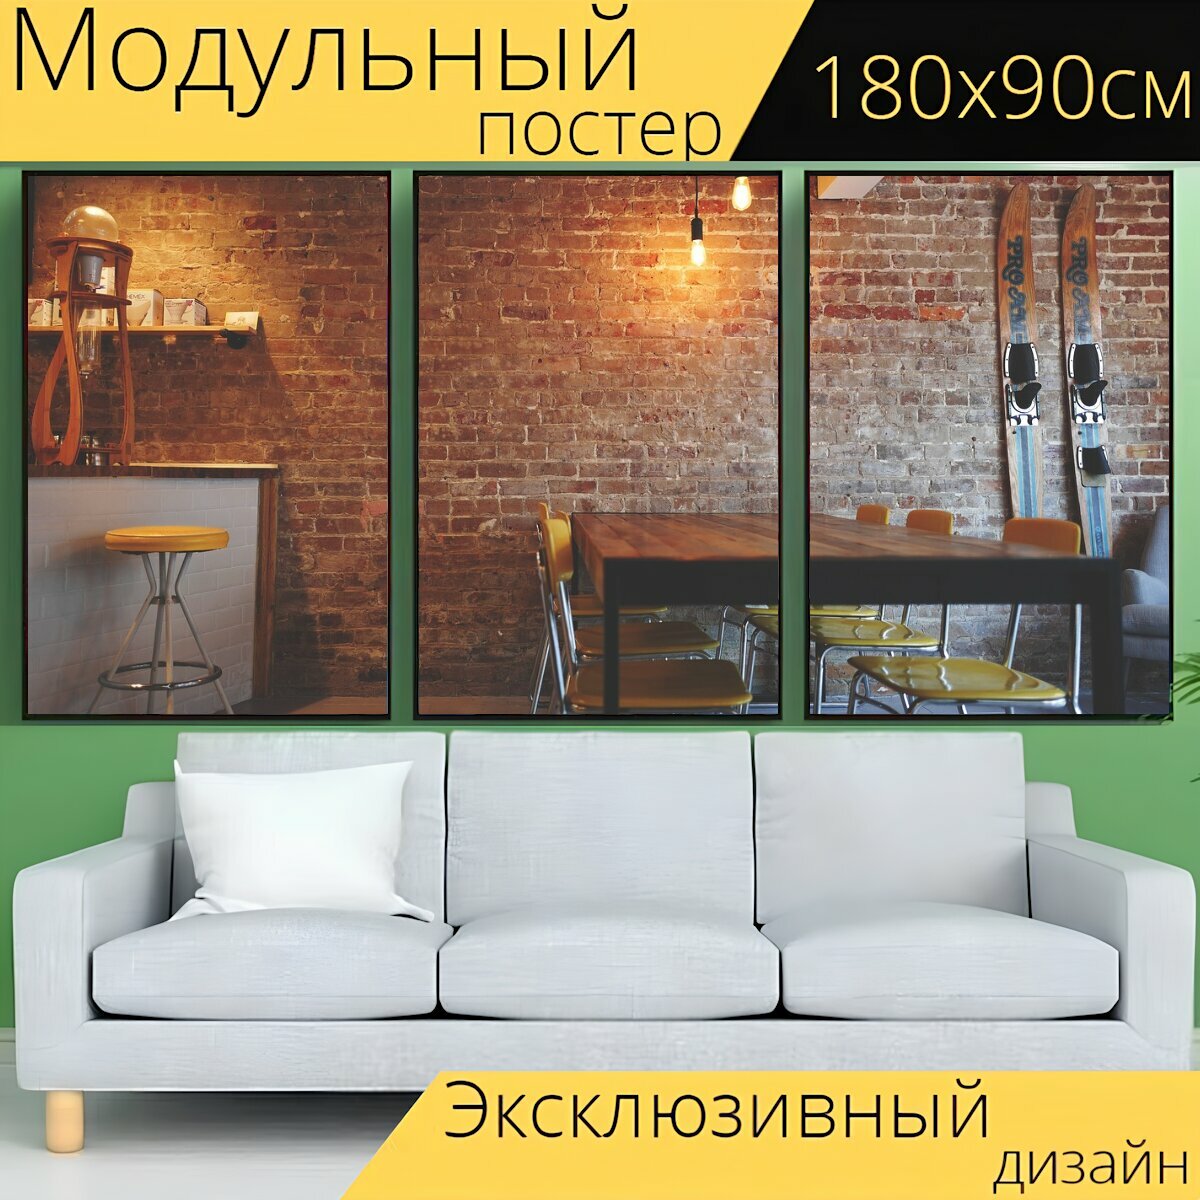 Модульный постер "Кирпичная стена, стулья, мебель" 180 x 90 см. для интерьера